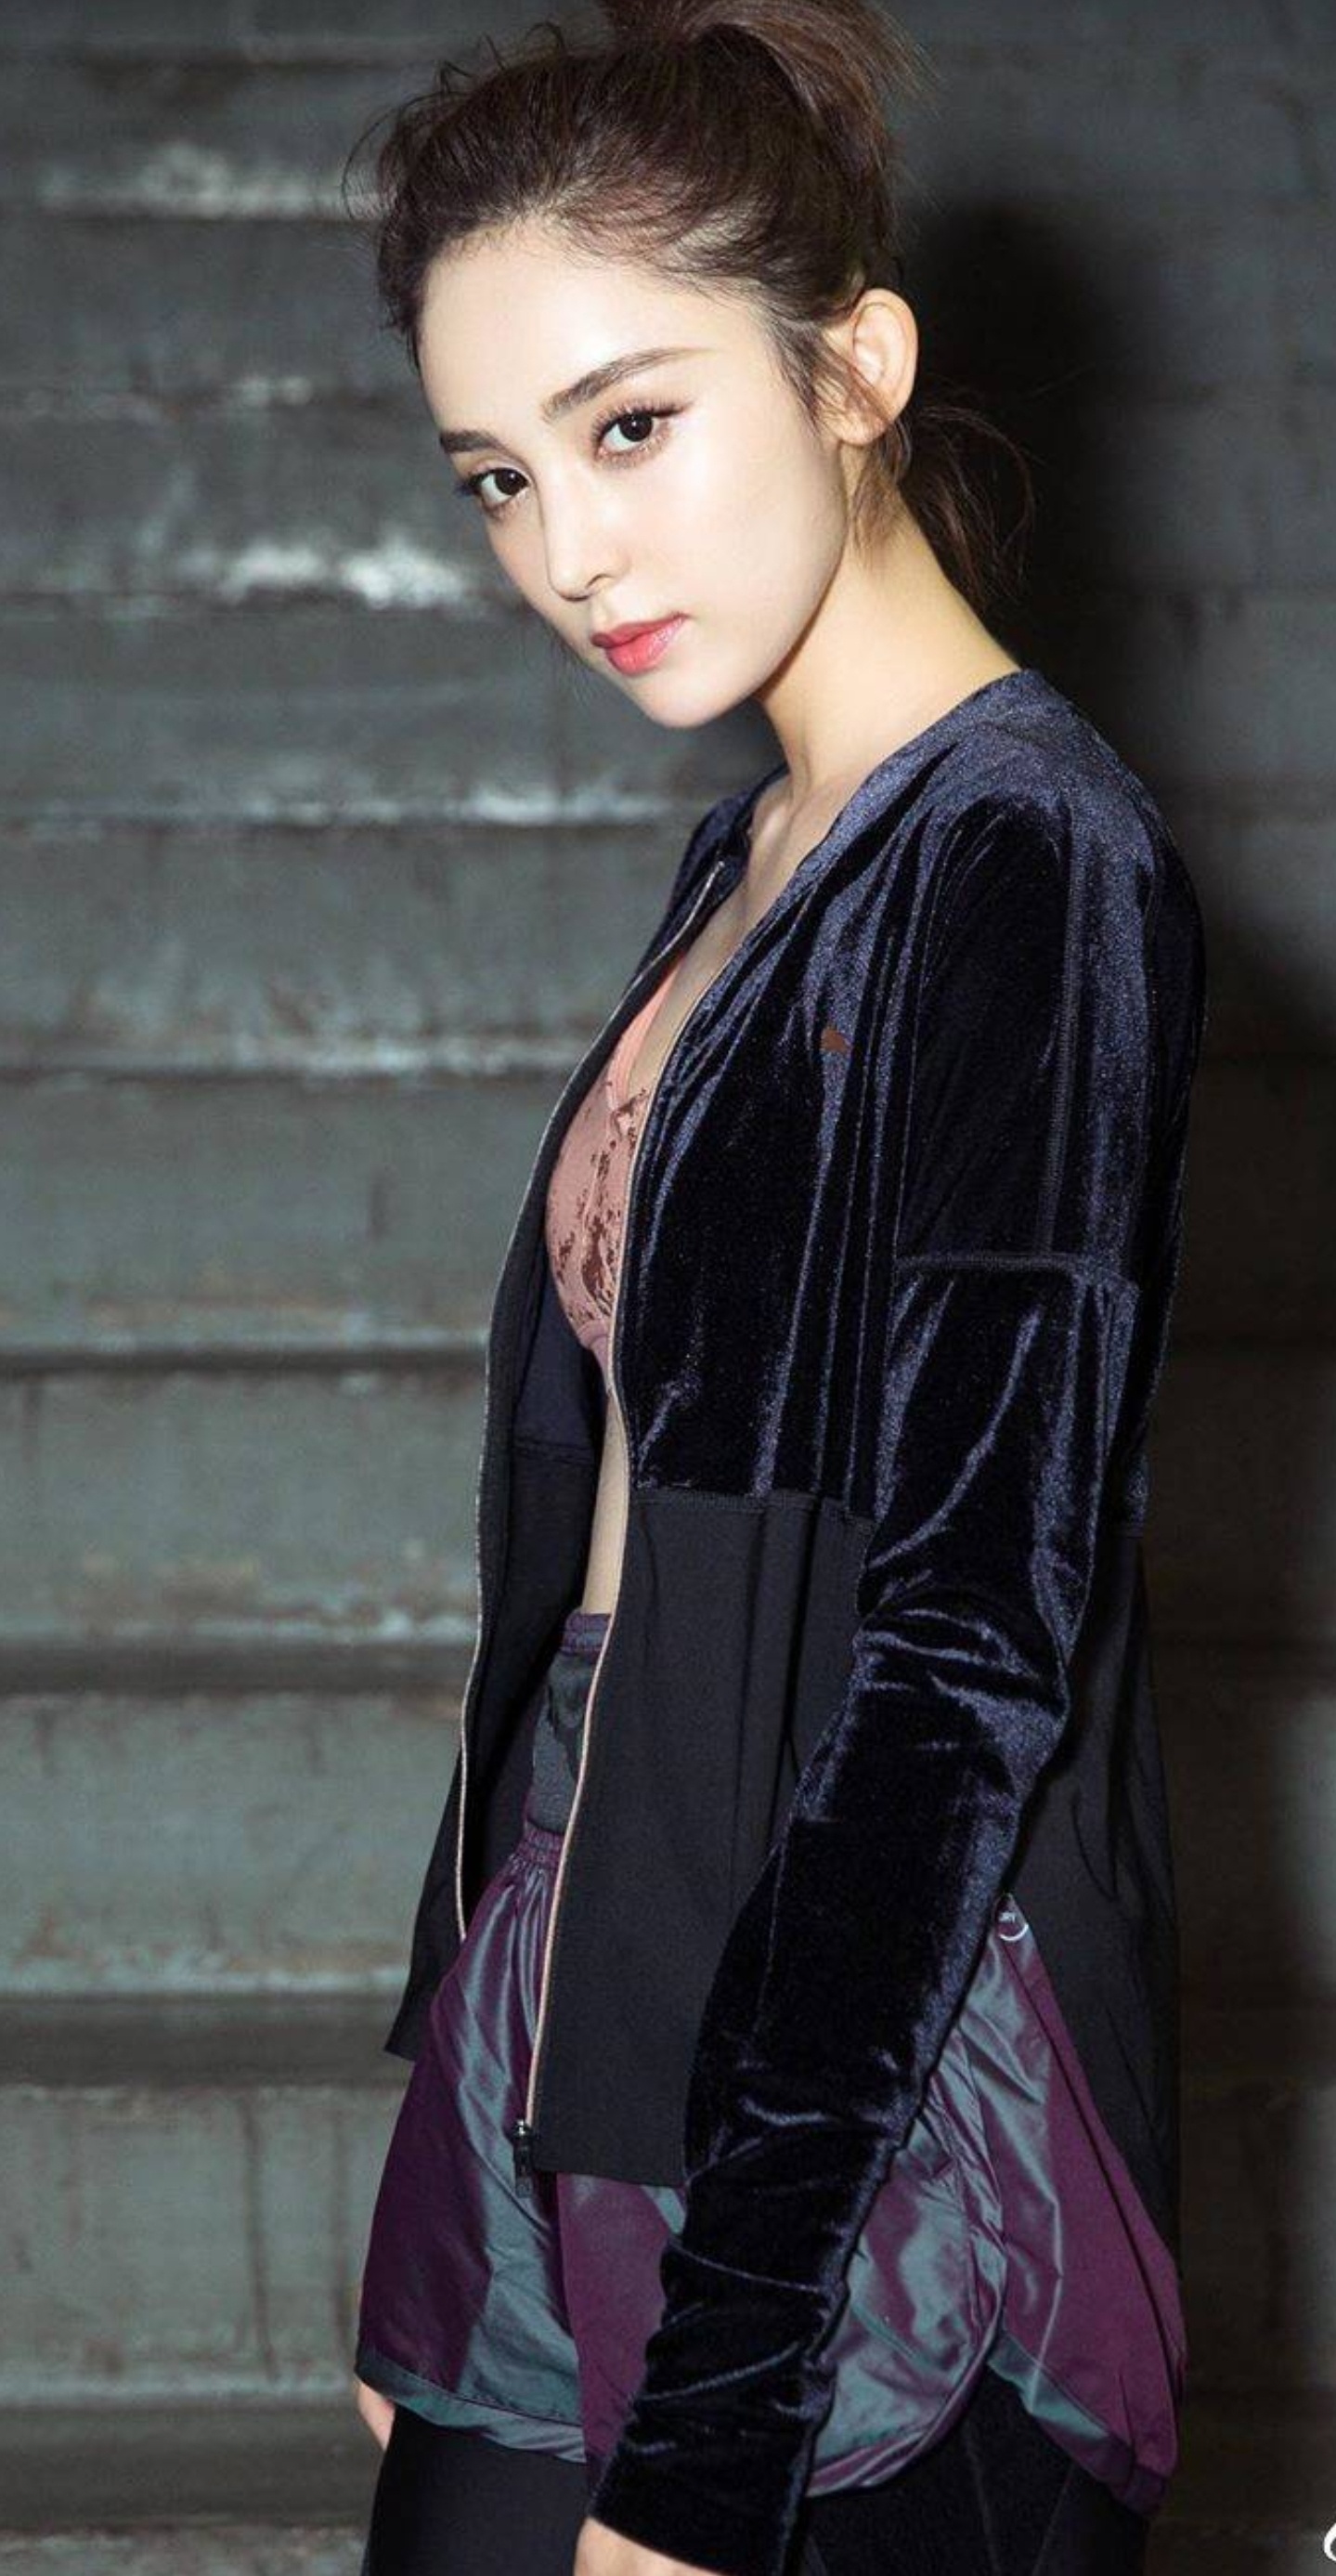 明星写真:古力娜扎粉色运动内衣商业宣传大片,体型优美健康阳光